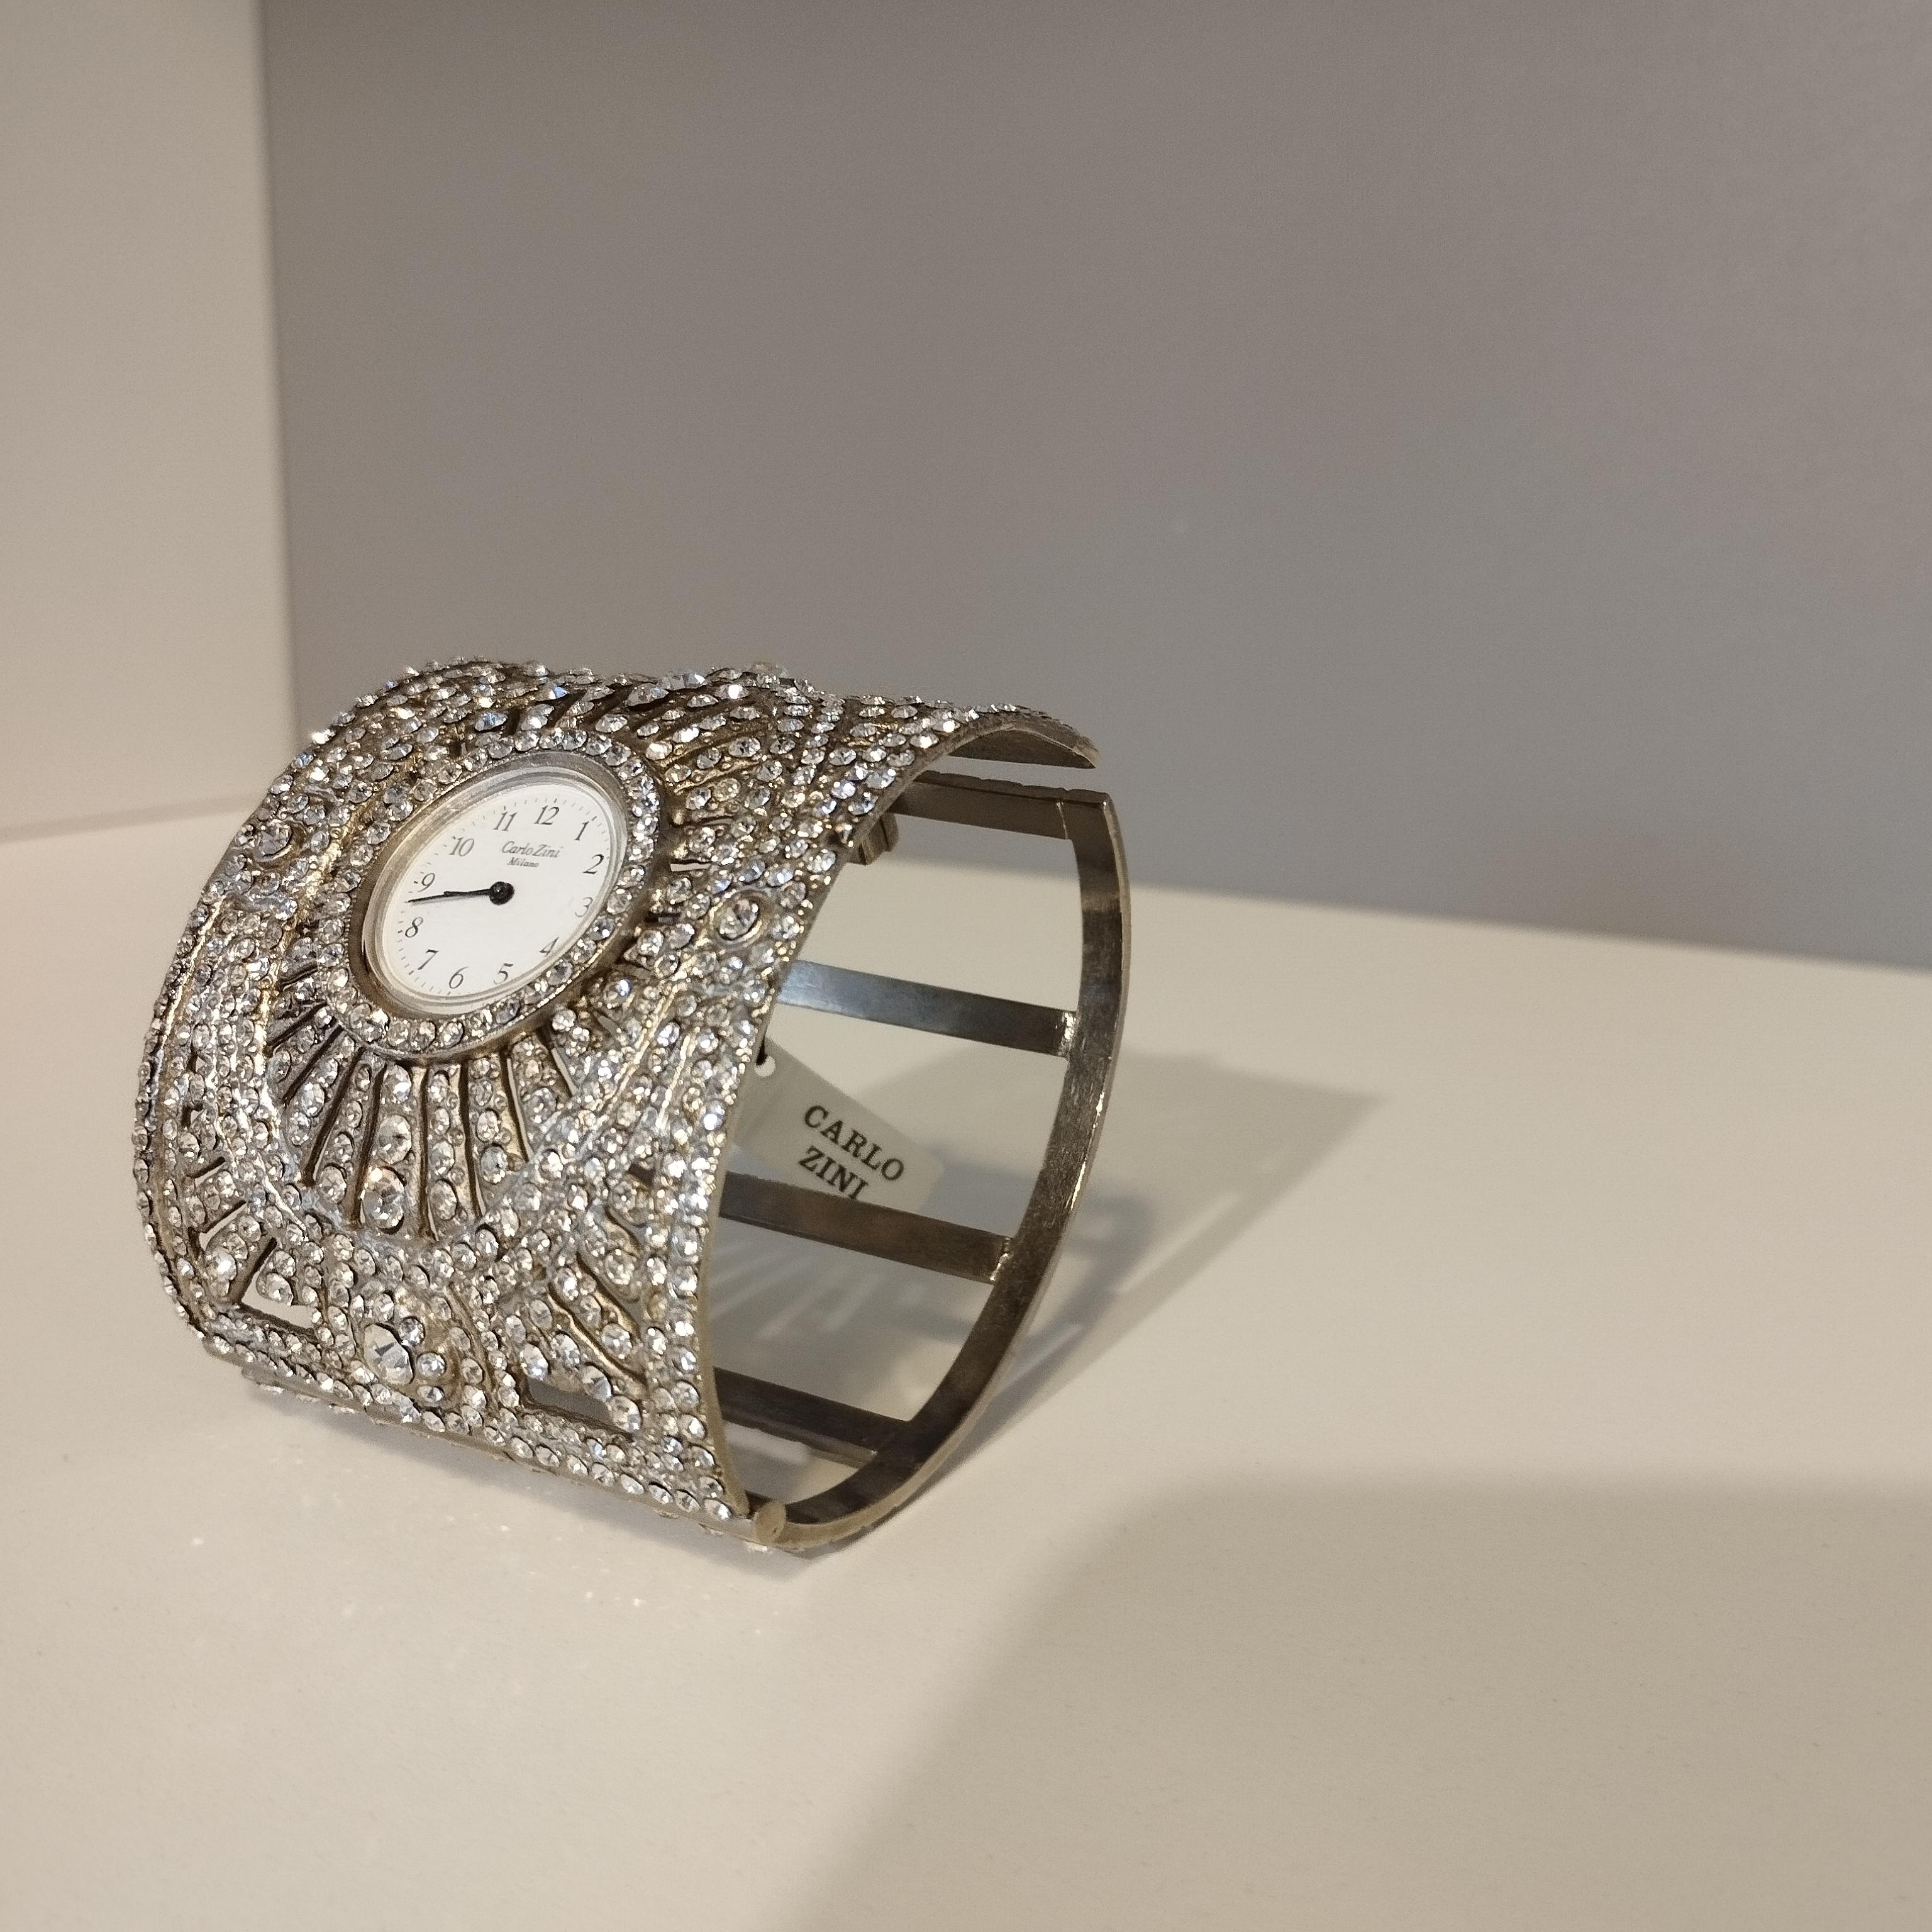 1980s Carlo Zini Unique Rhinestones Bracelet / Watch In Excellent Condition For Sale In Gazzaniga (BG), IT